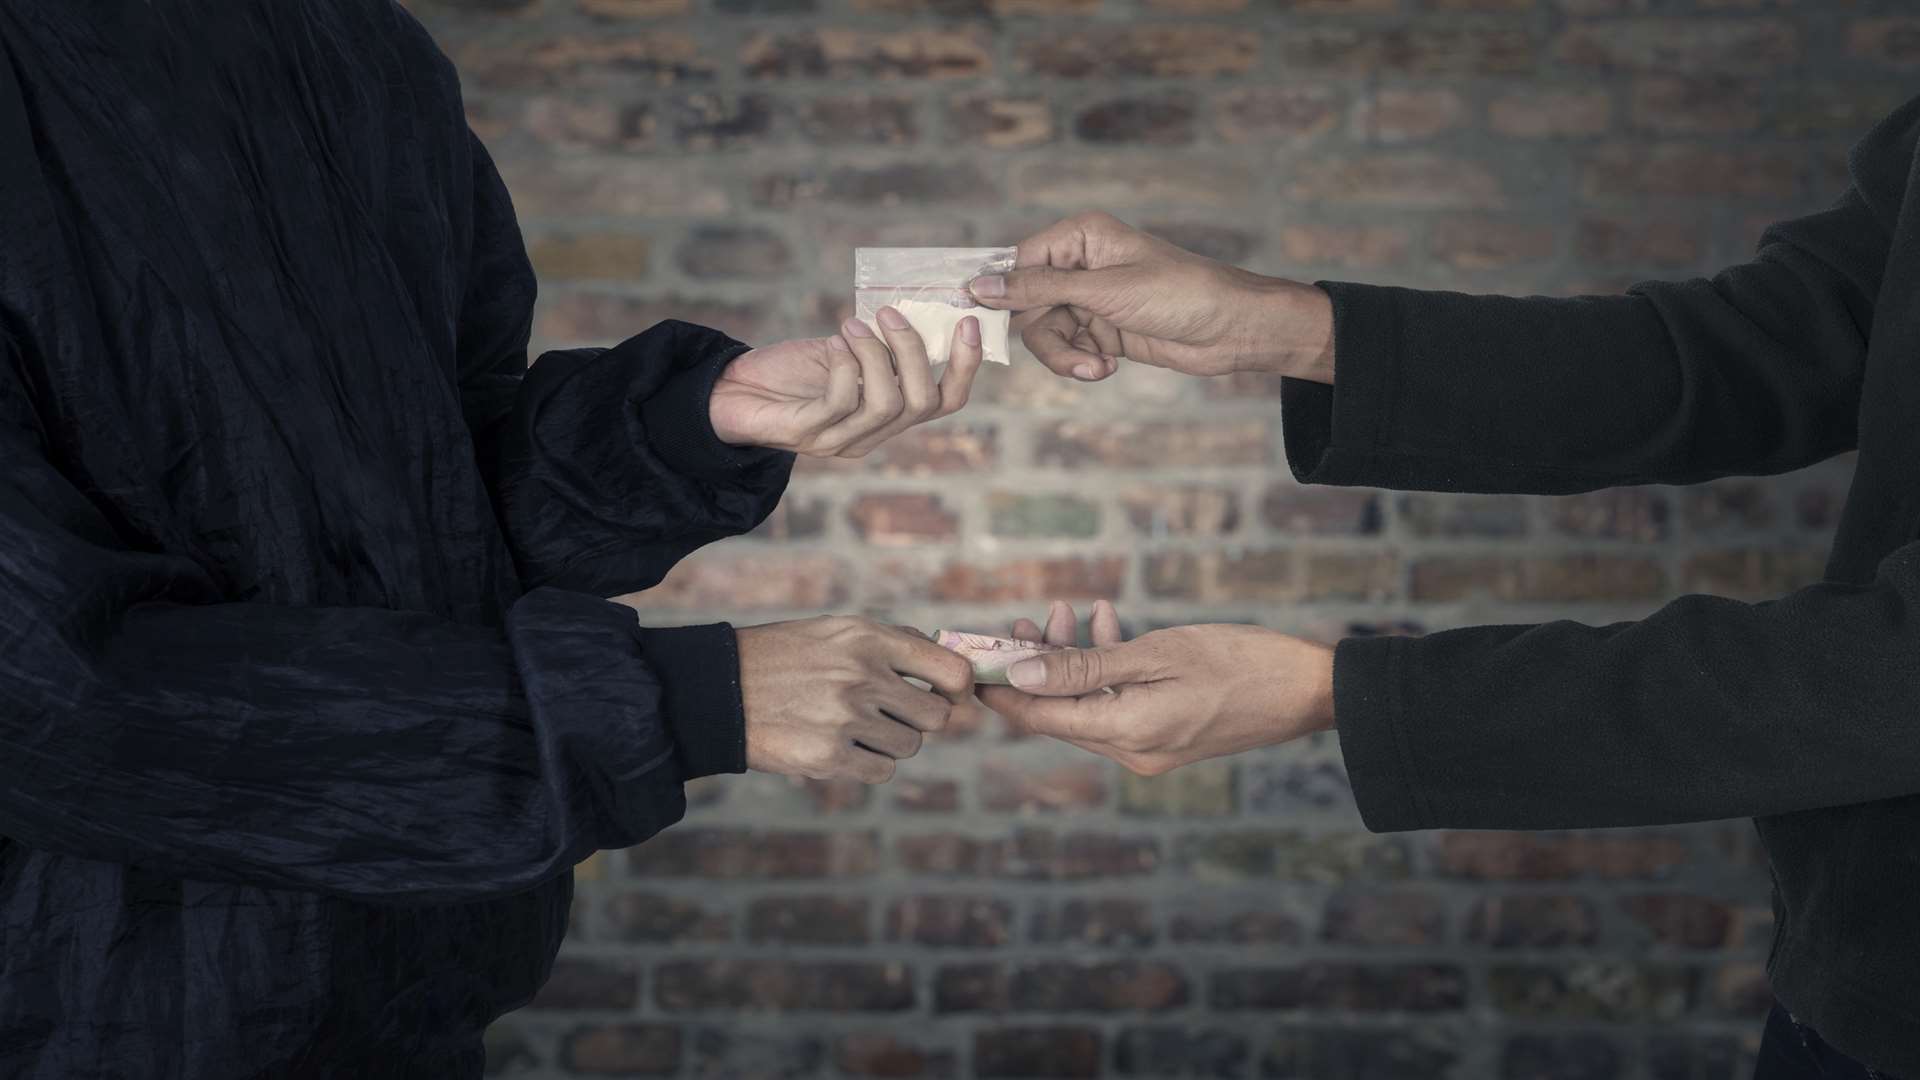 Drug dealer taking money for heroin. Stock image